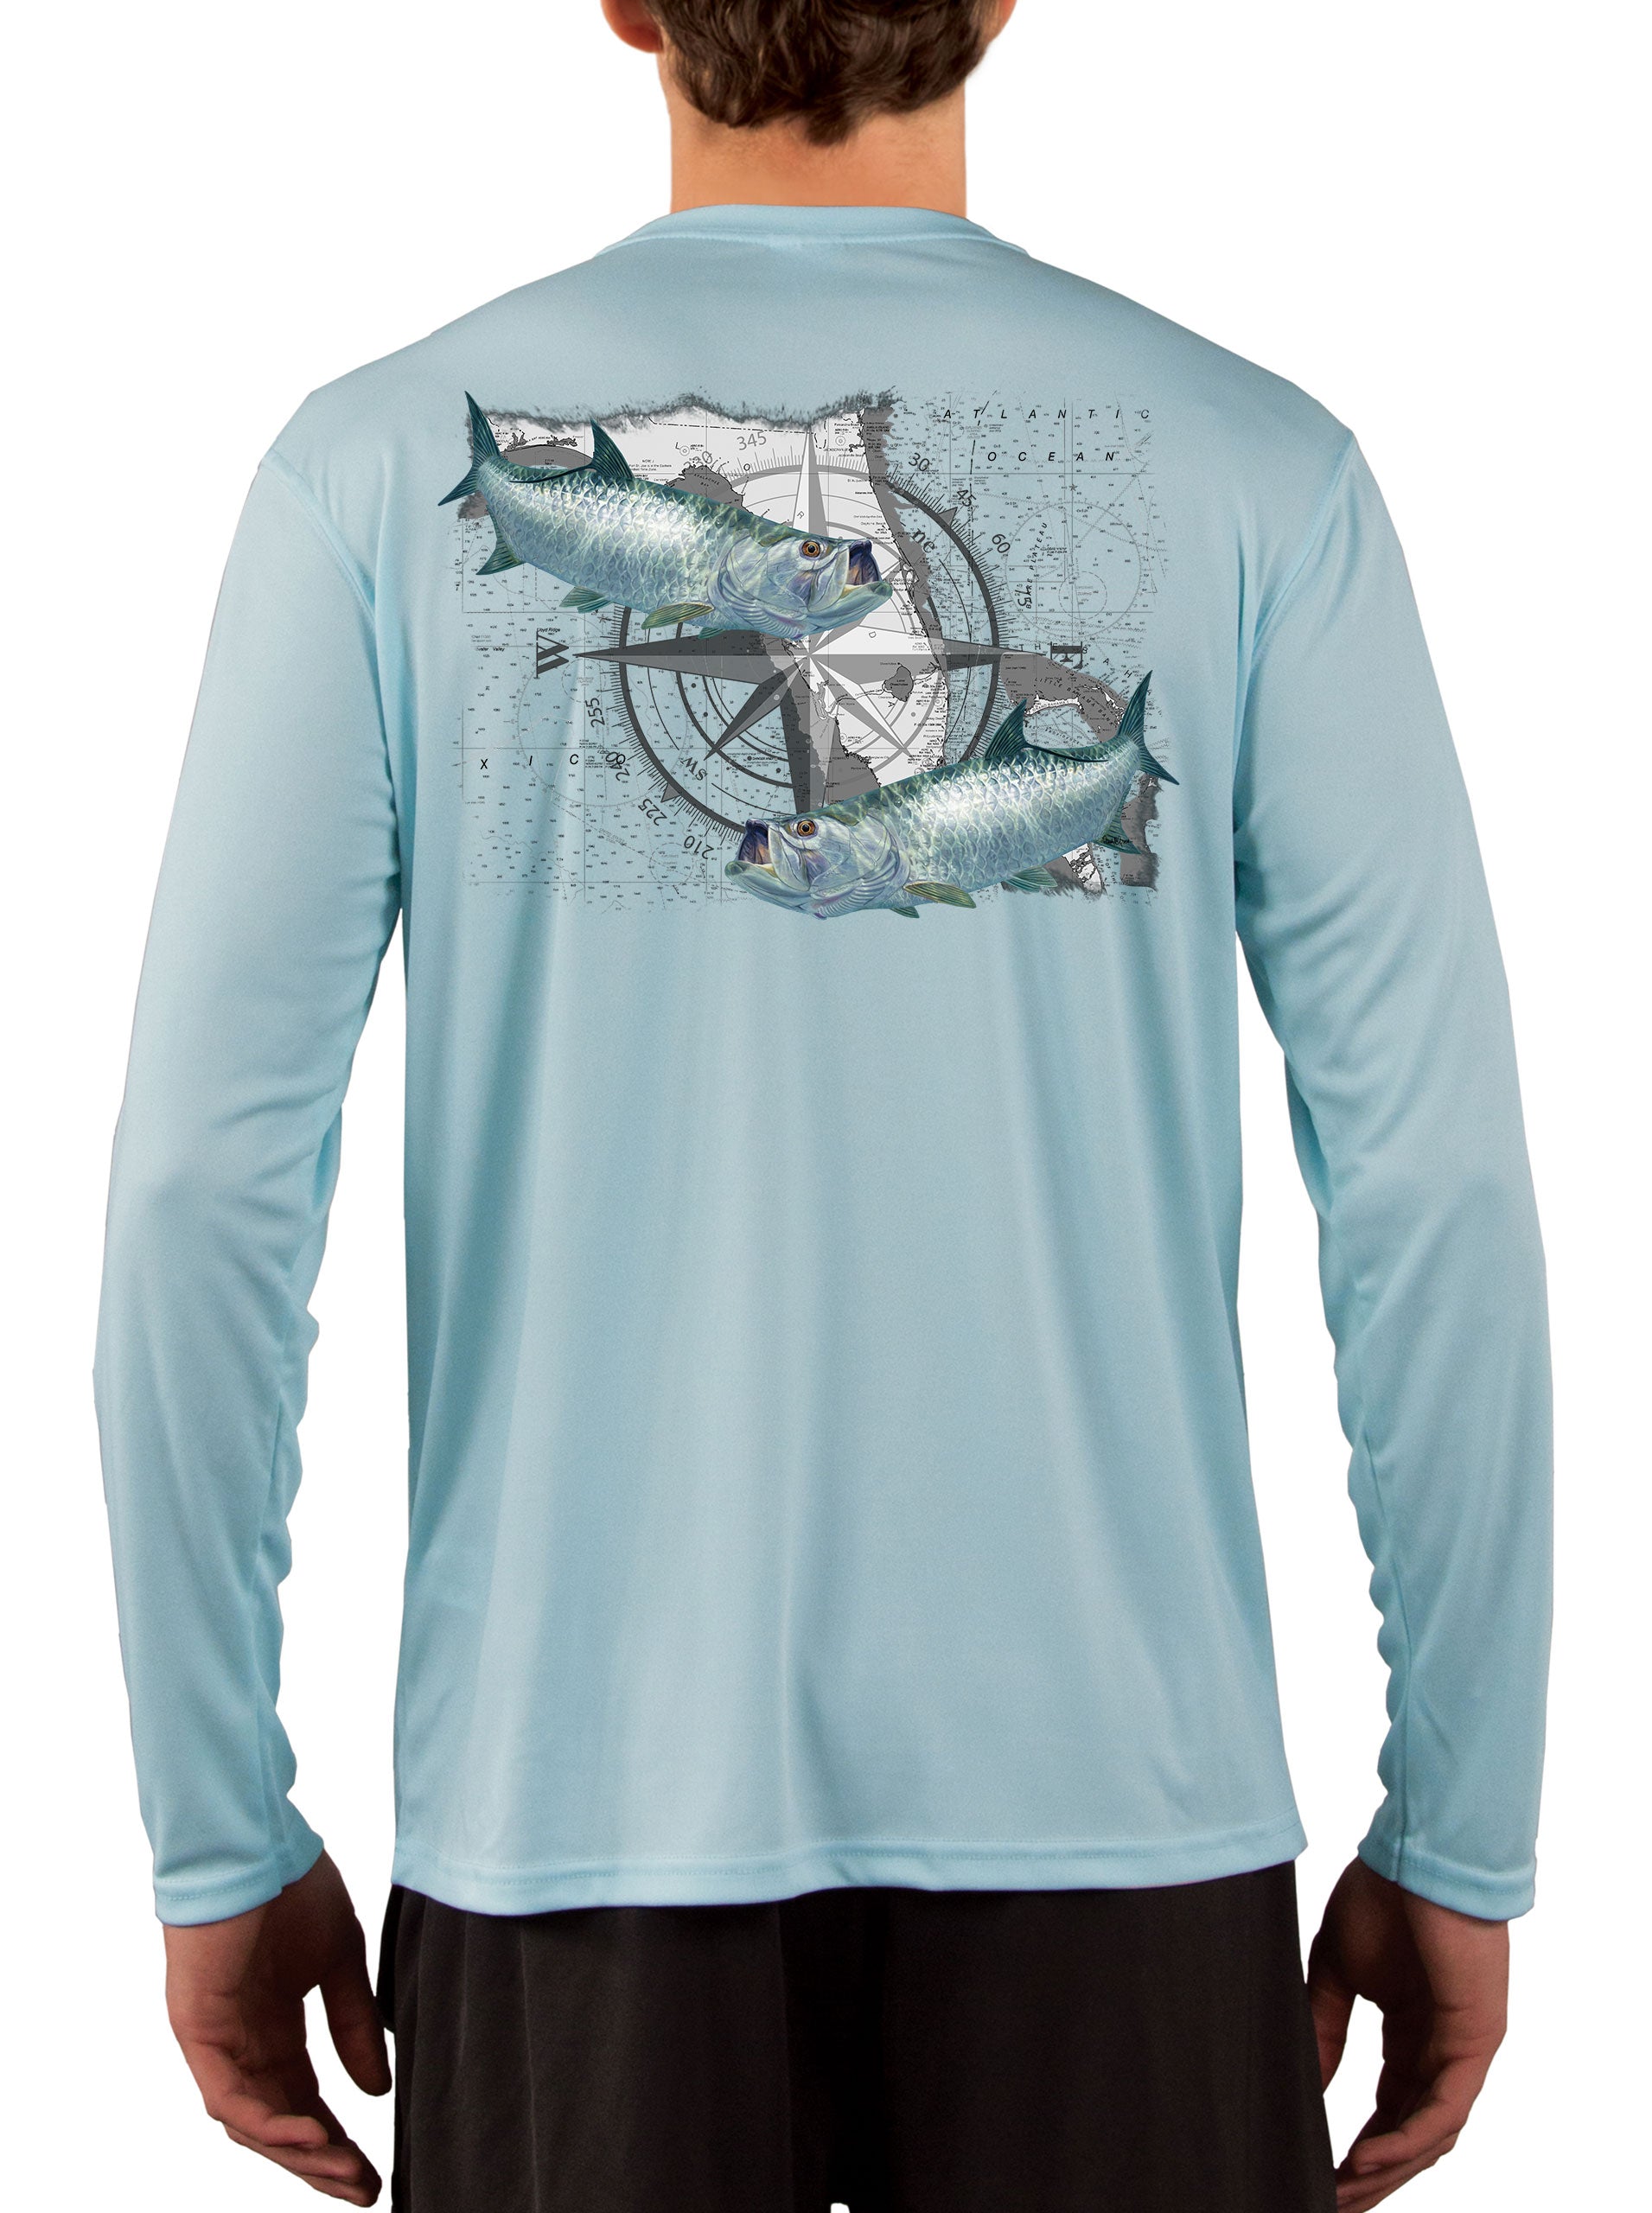 Tarpon Compass Camisas de pesca para hombres bandera del estado de Florida